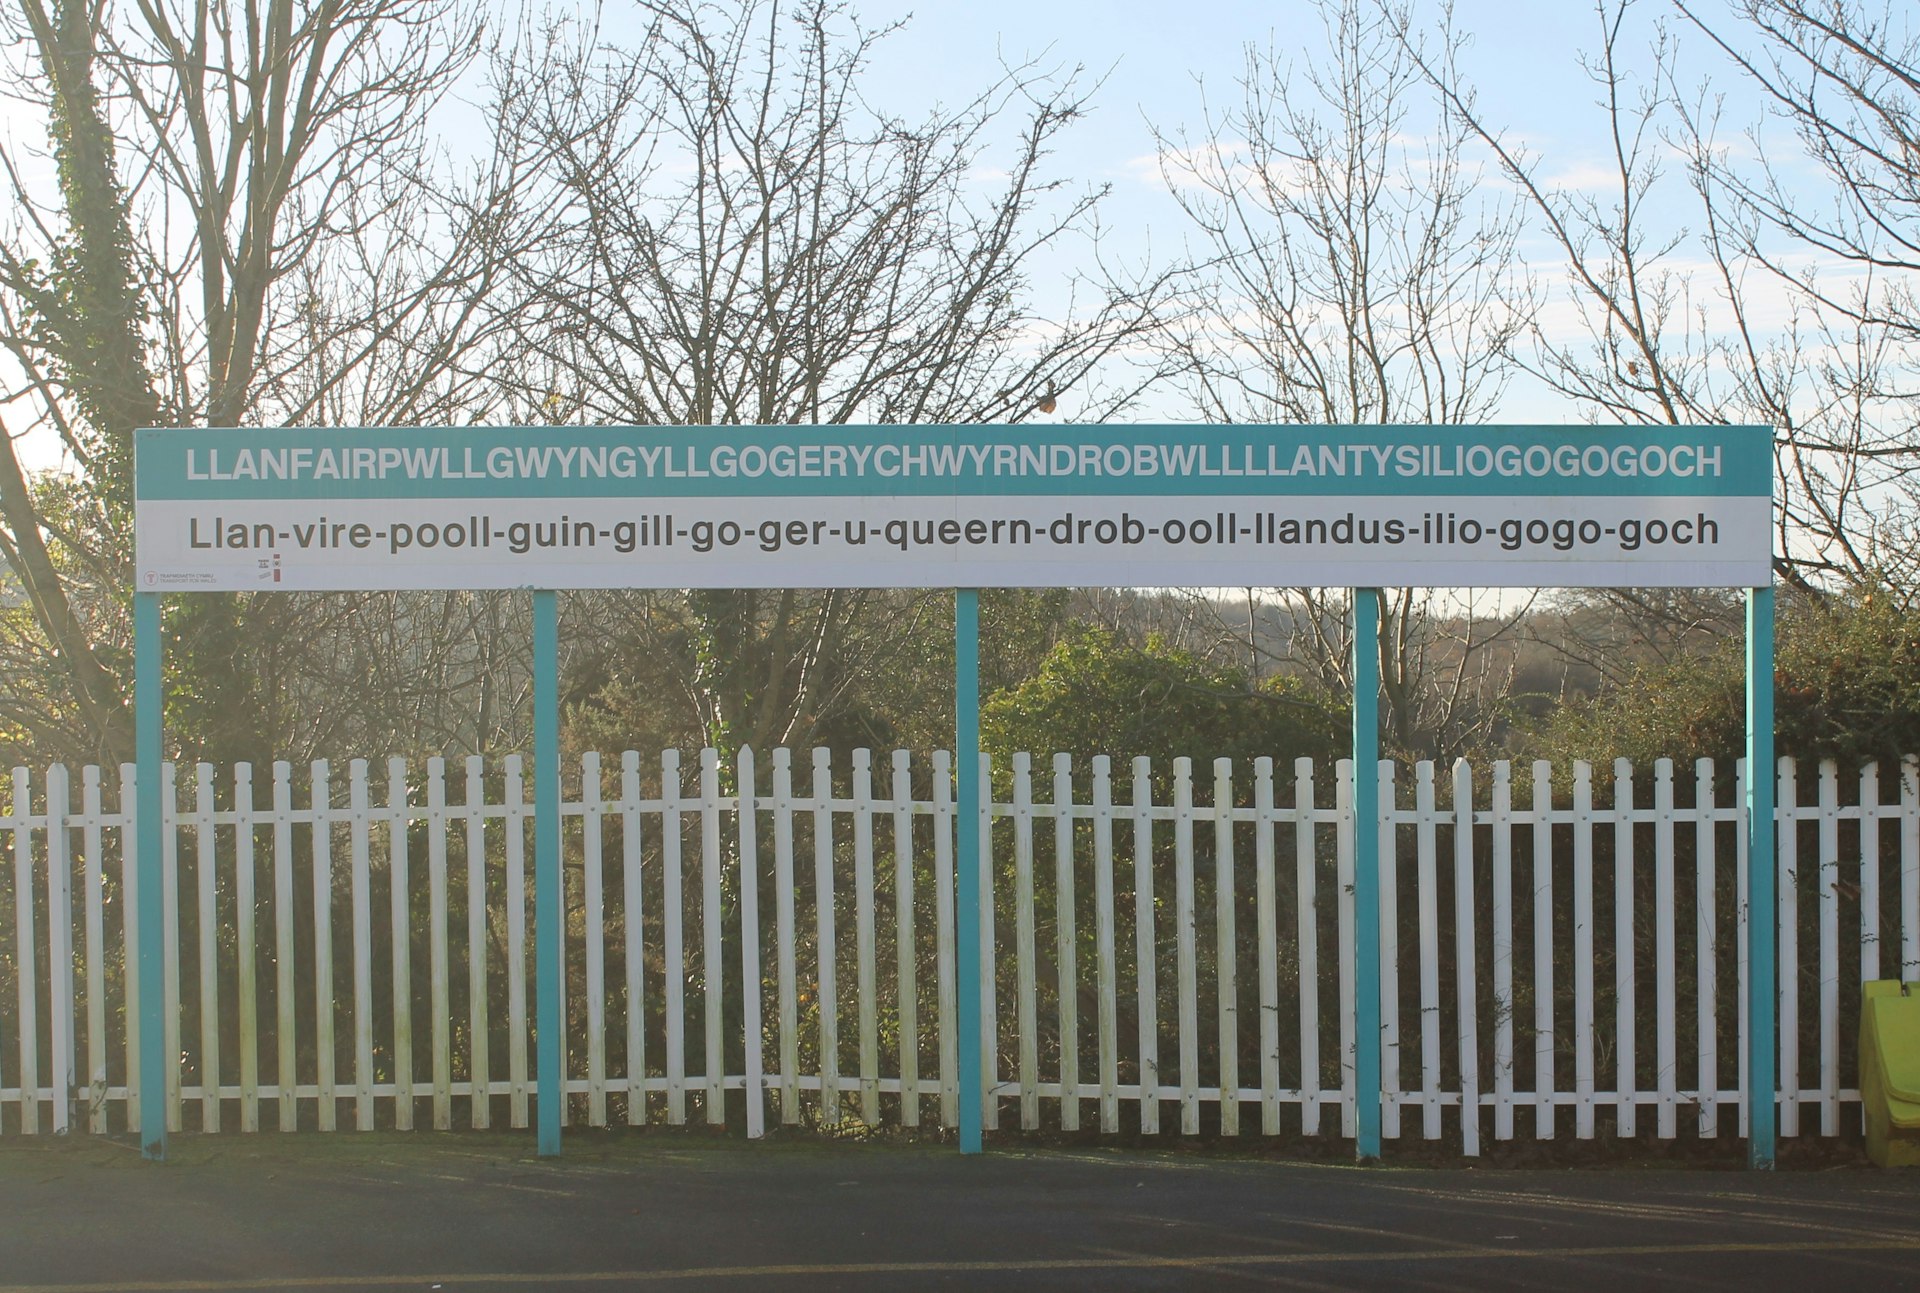 The railway station sign of the town of Llanfairpwllgwyngyllgogerychwyrndrobwllllantysiliogogogoch in Anglesey.